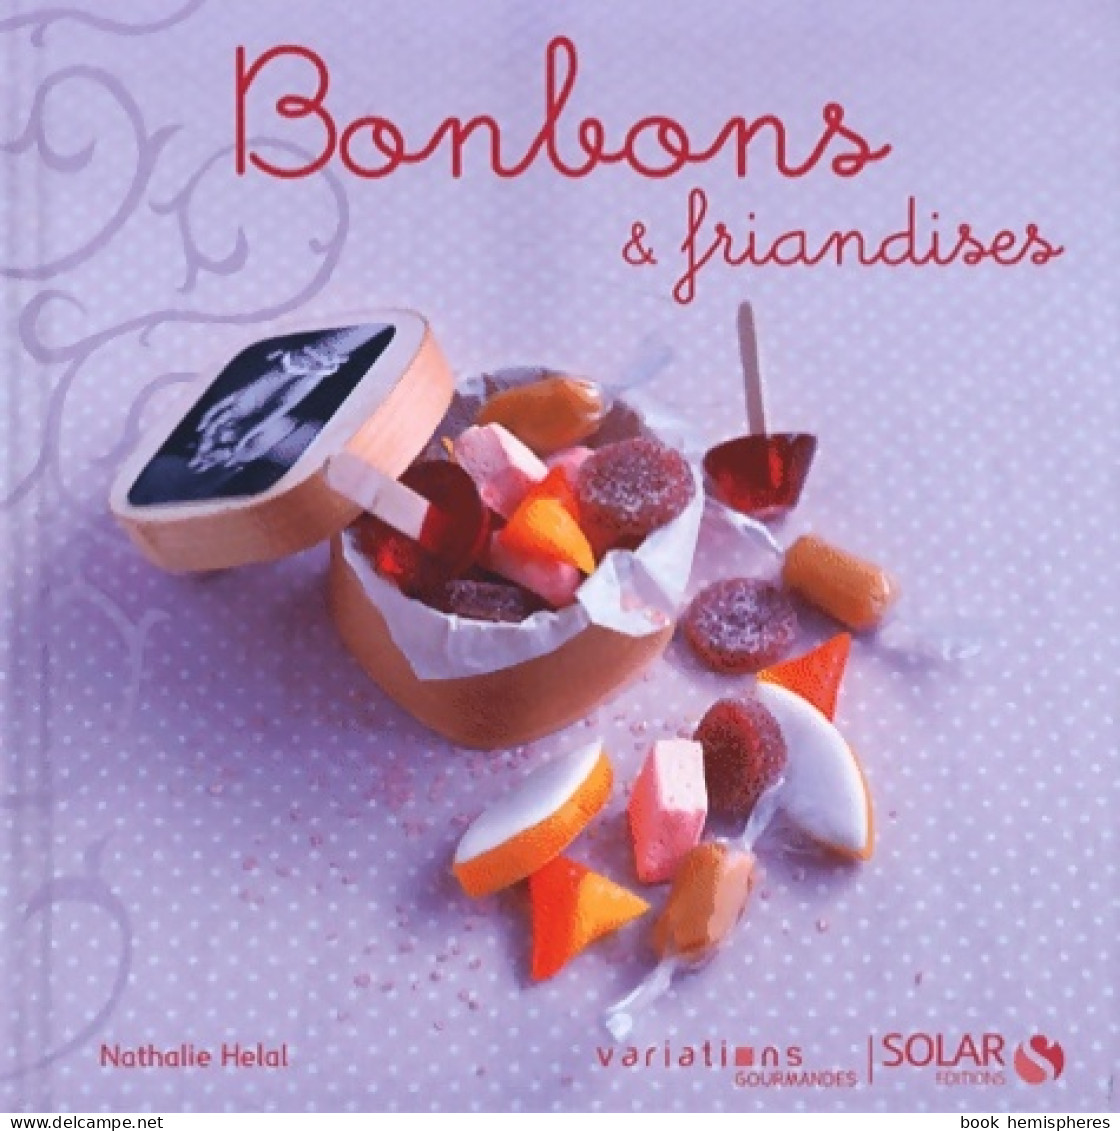 Bonbons & Friandises (2012) De Nathalie Helal - Gastronomie